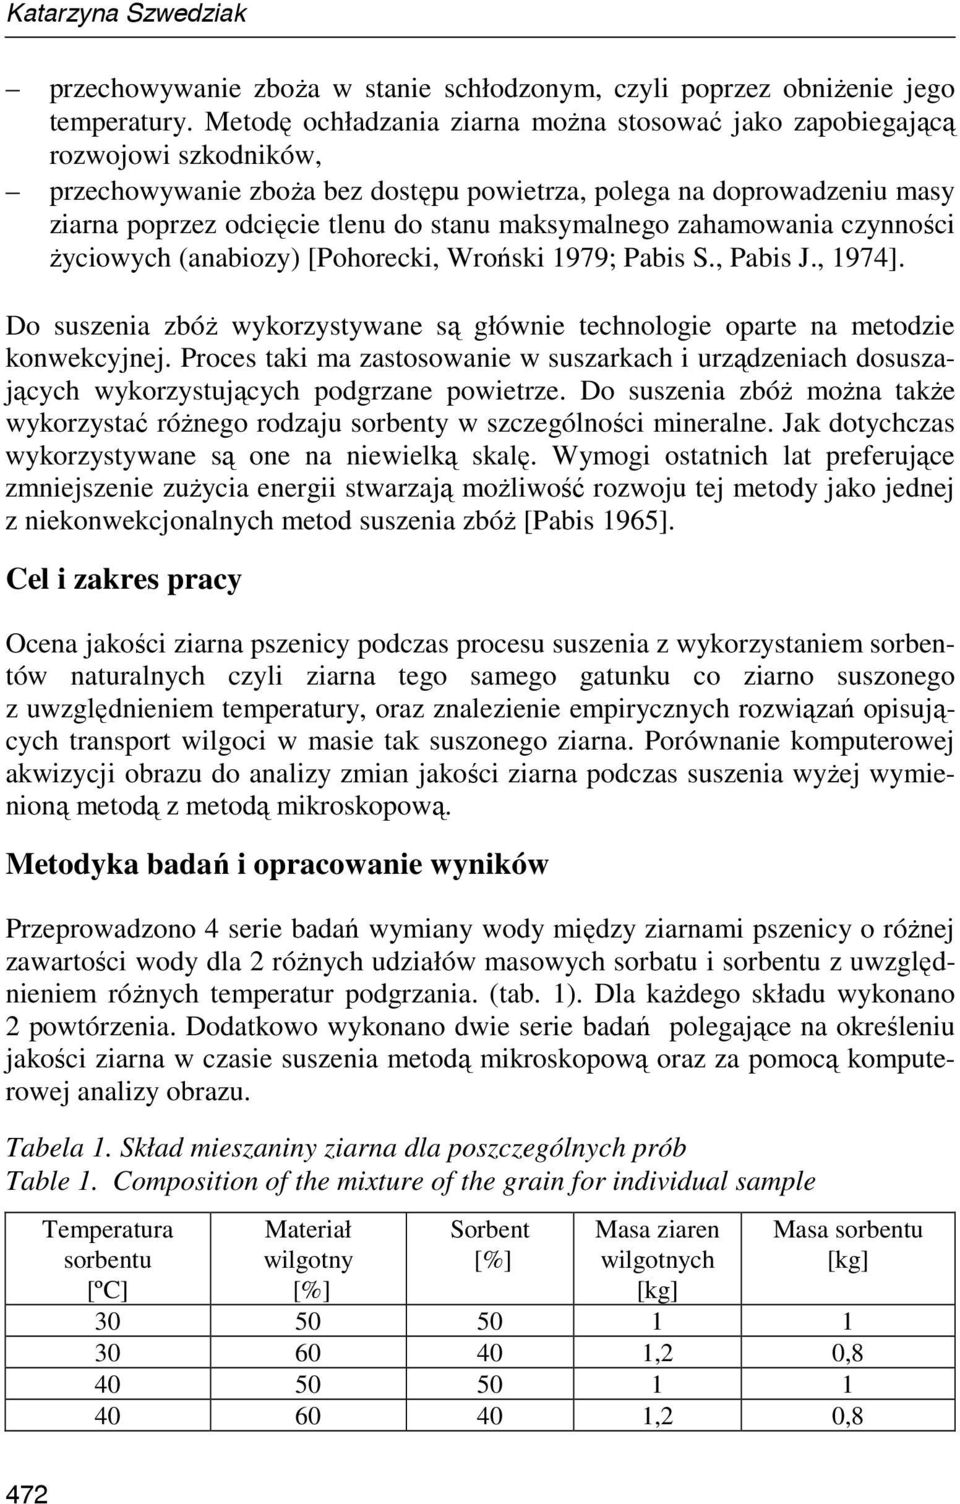 maksymalnego zahamowania czynności Ŝyciowych (anabiozy) [Pohorecki, Wroński 1979; Pabis S., Pabis J., 1974]. Do suszenia zbóŝ wykorzystywane są głównie technologie oparte na metodzie konwekcyjnej.